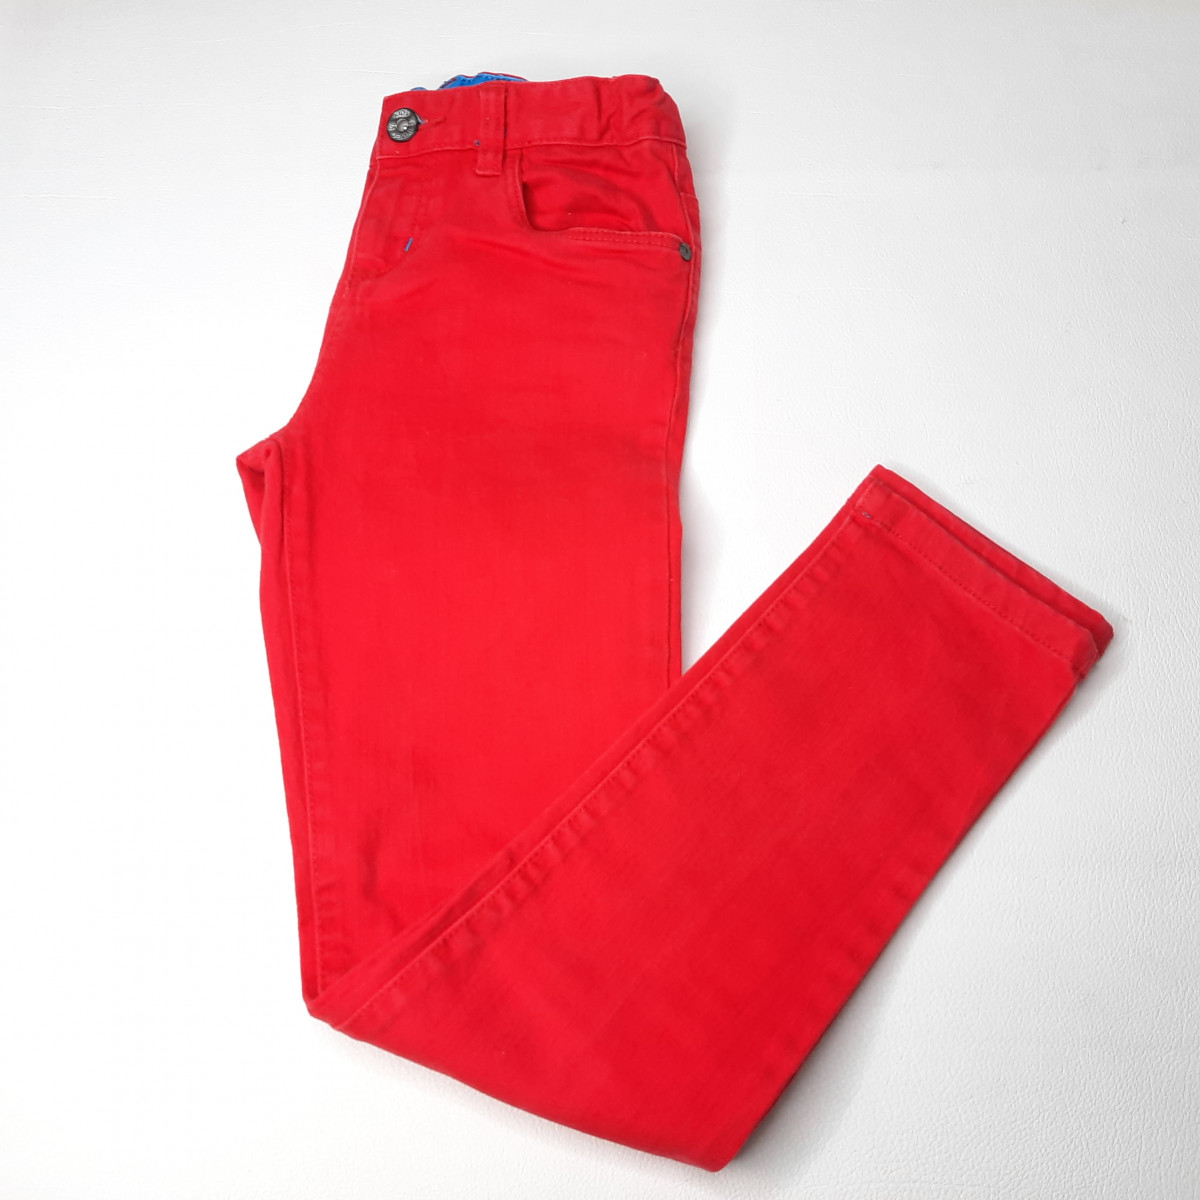 Jeans rouge - Boutique Toup'tibou - photo 6